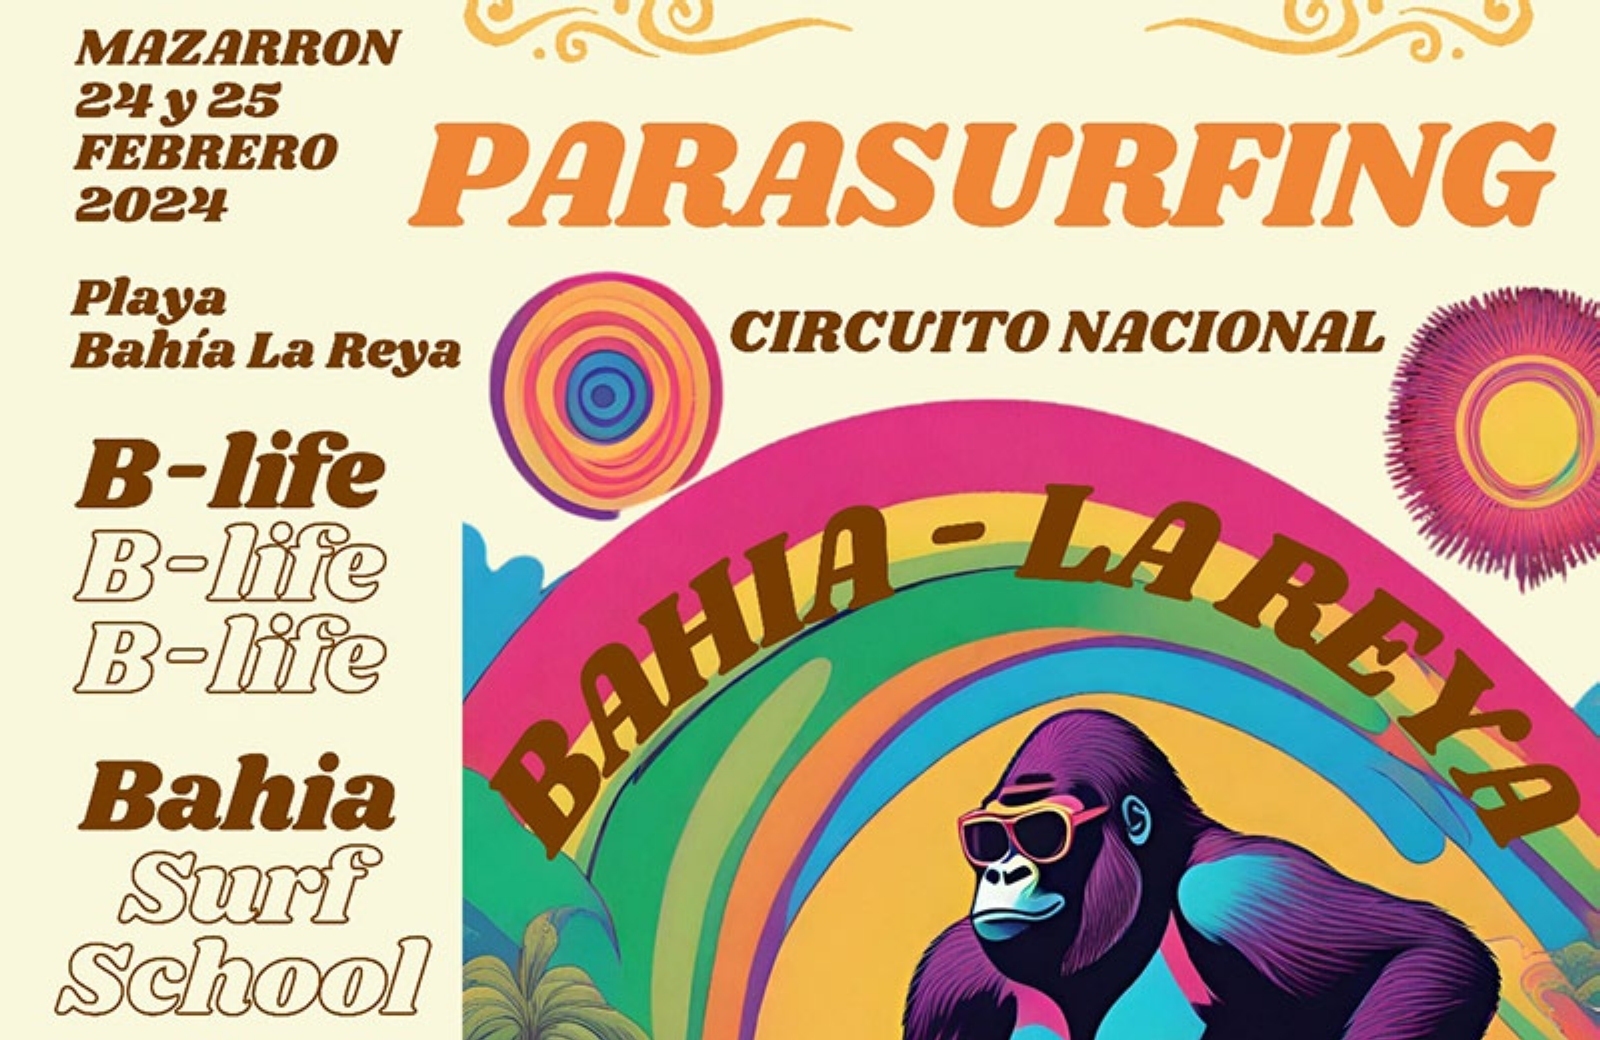 La Copa de España Parasurfing 2024 en Mazarrón